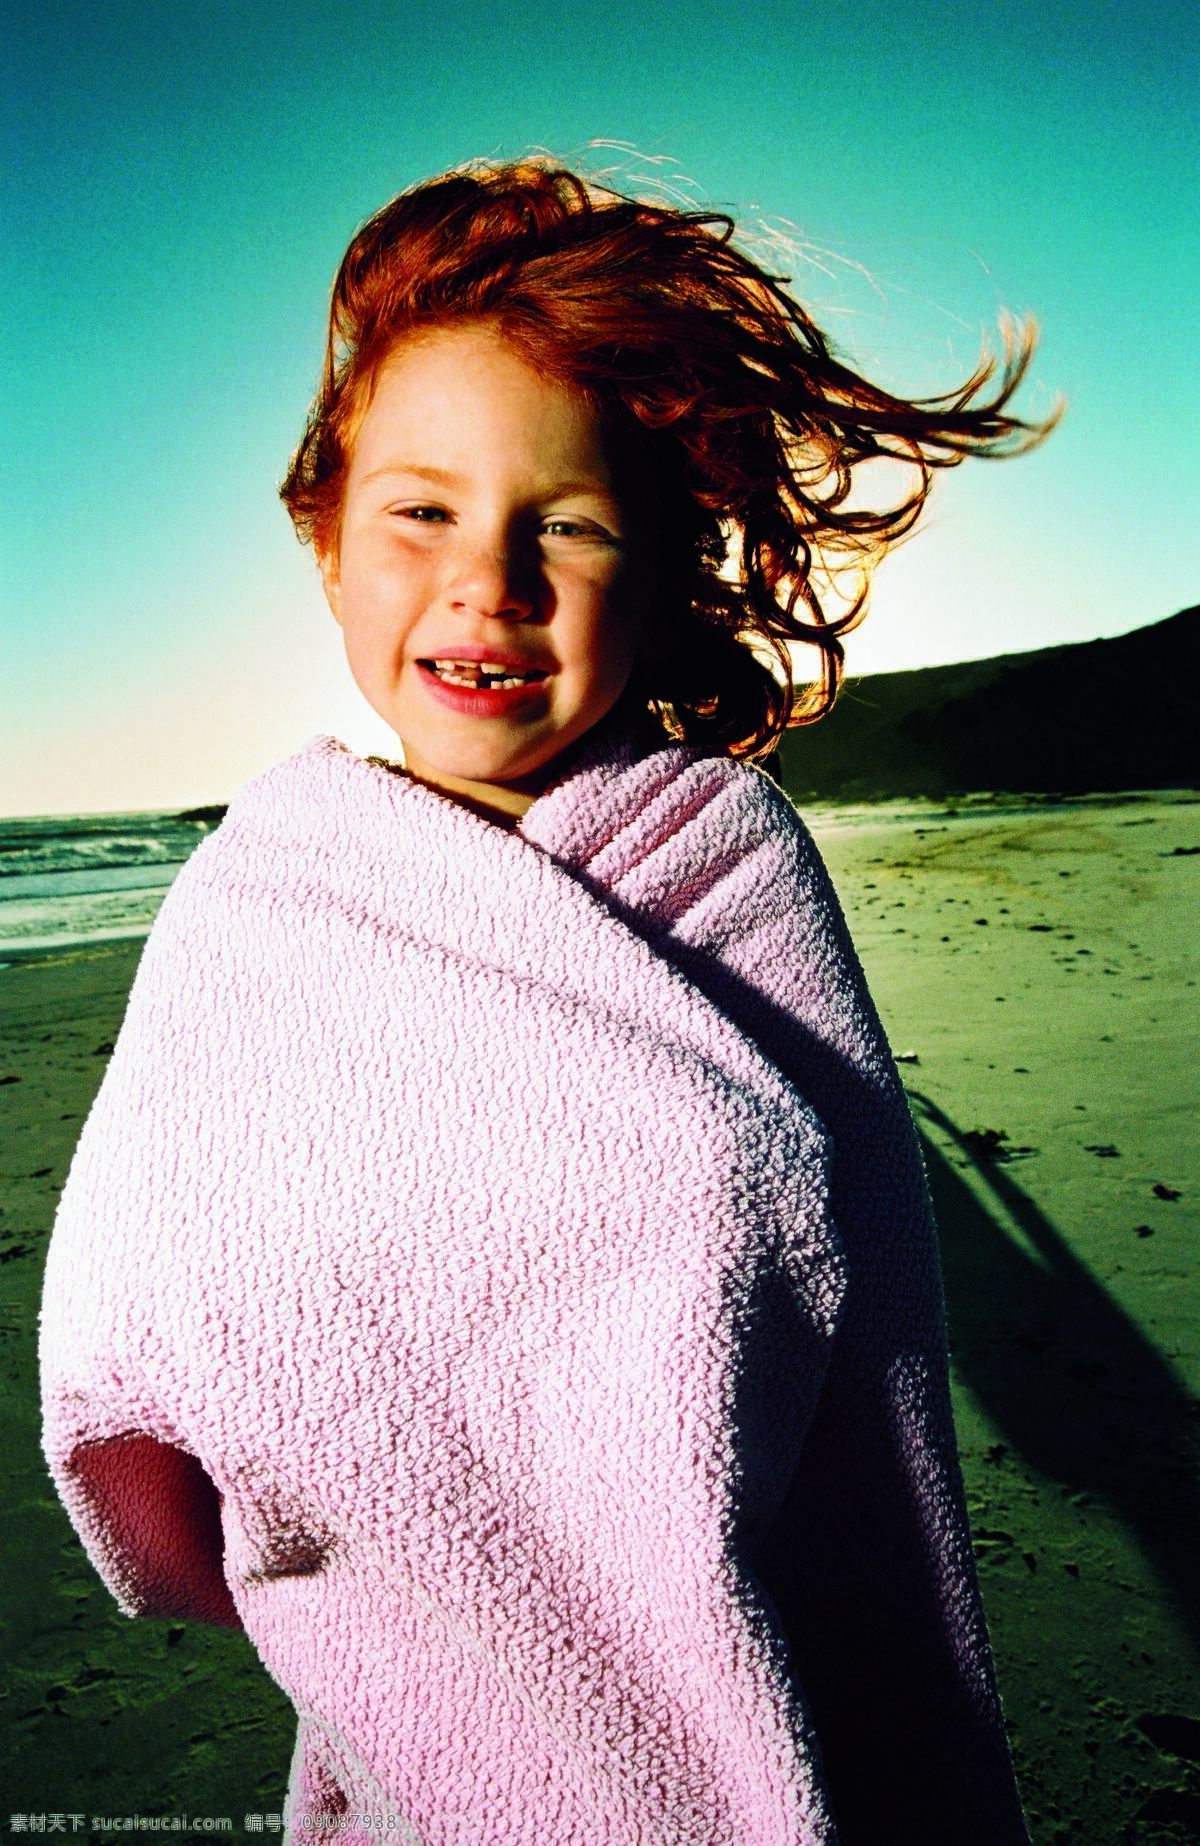 沙滩 上 小女孩 外国儿童 孩子 小孩 可爱孩子 儿童图片 人物图片